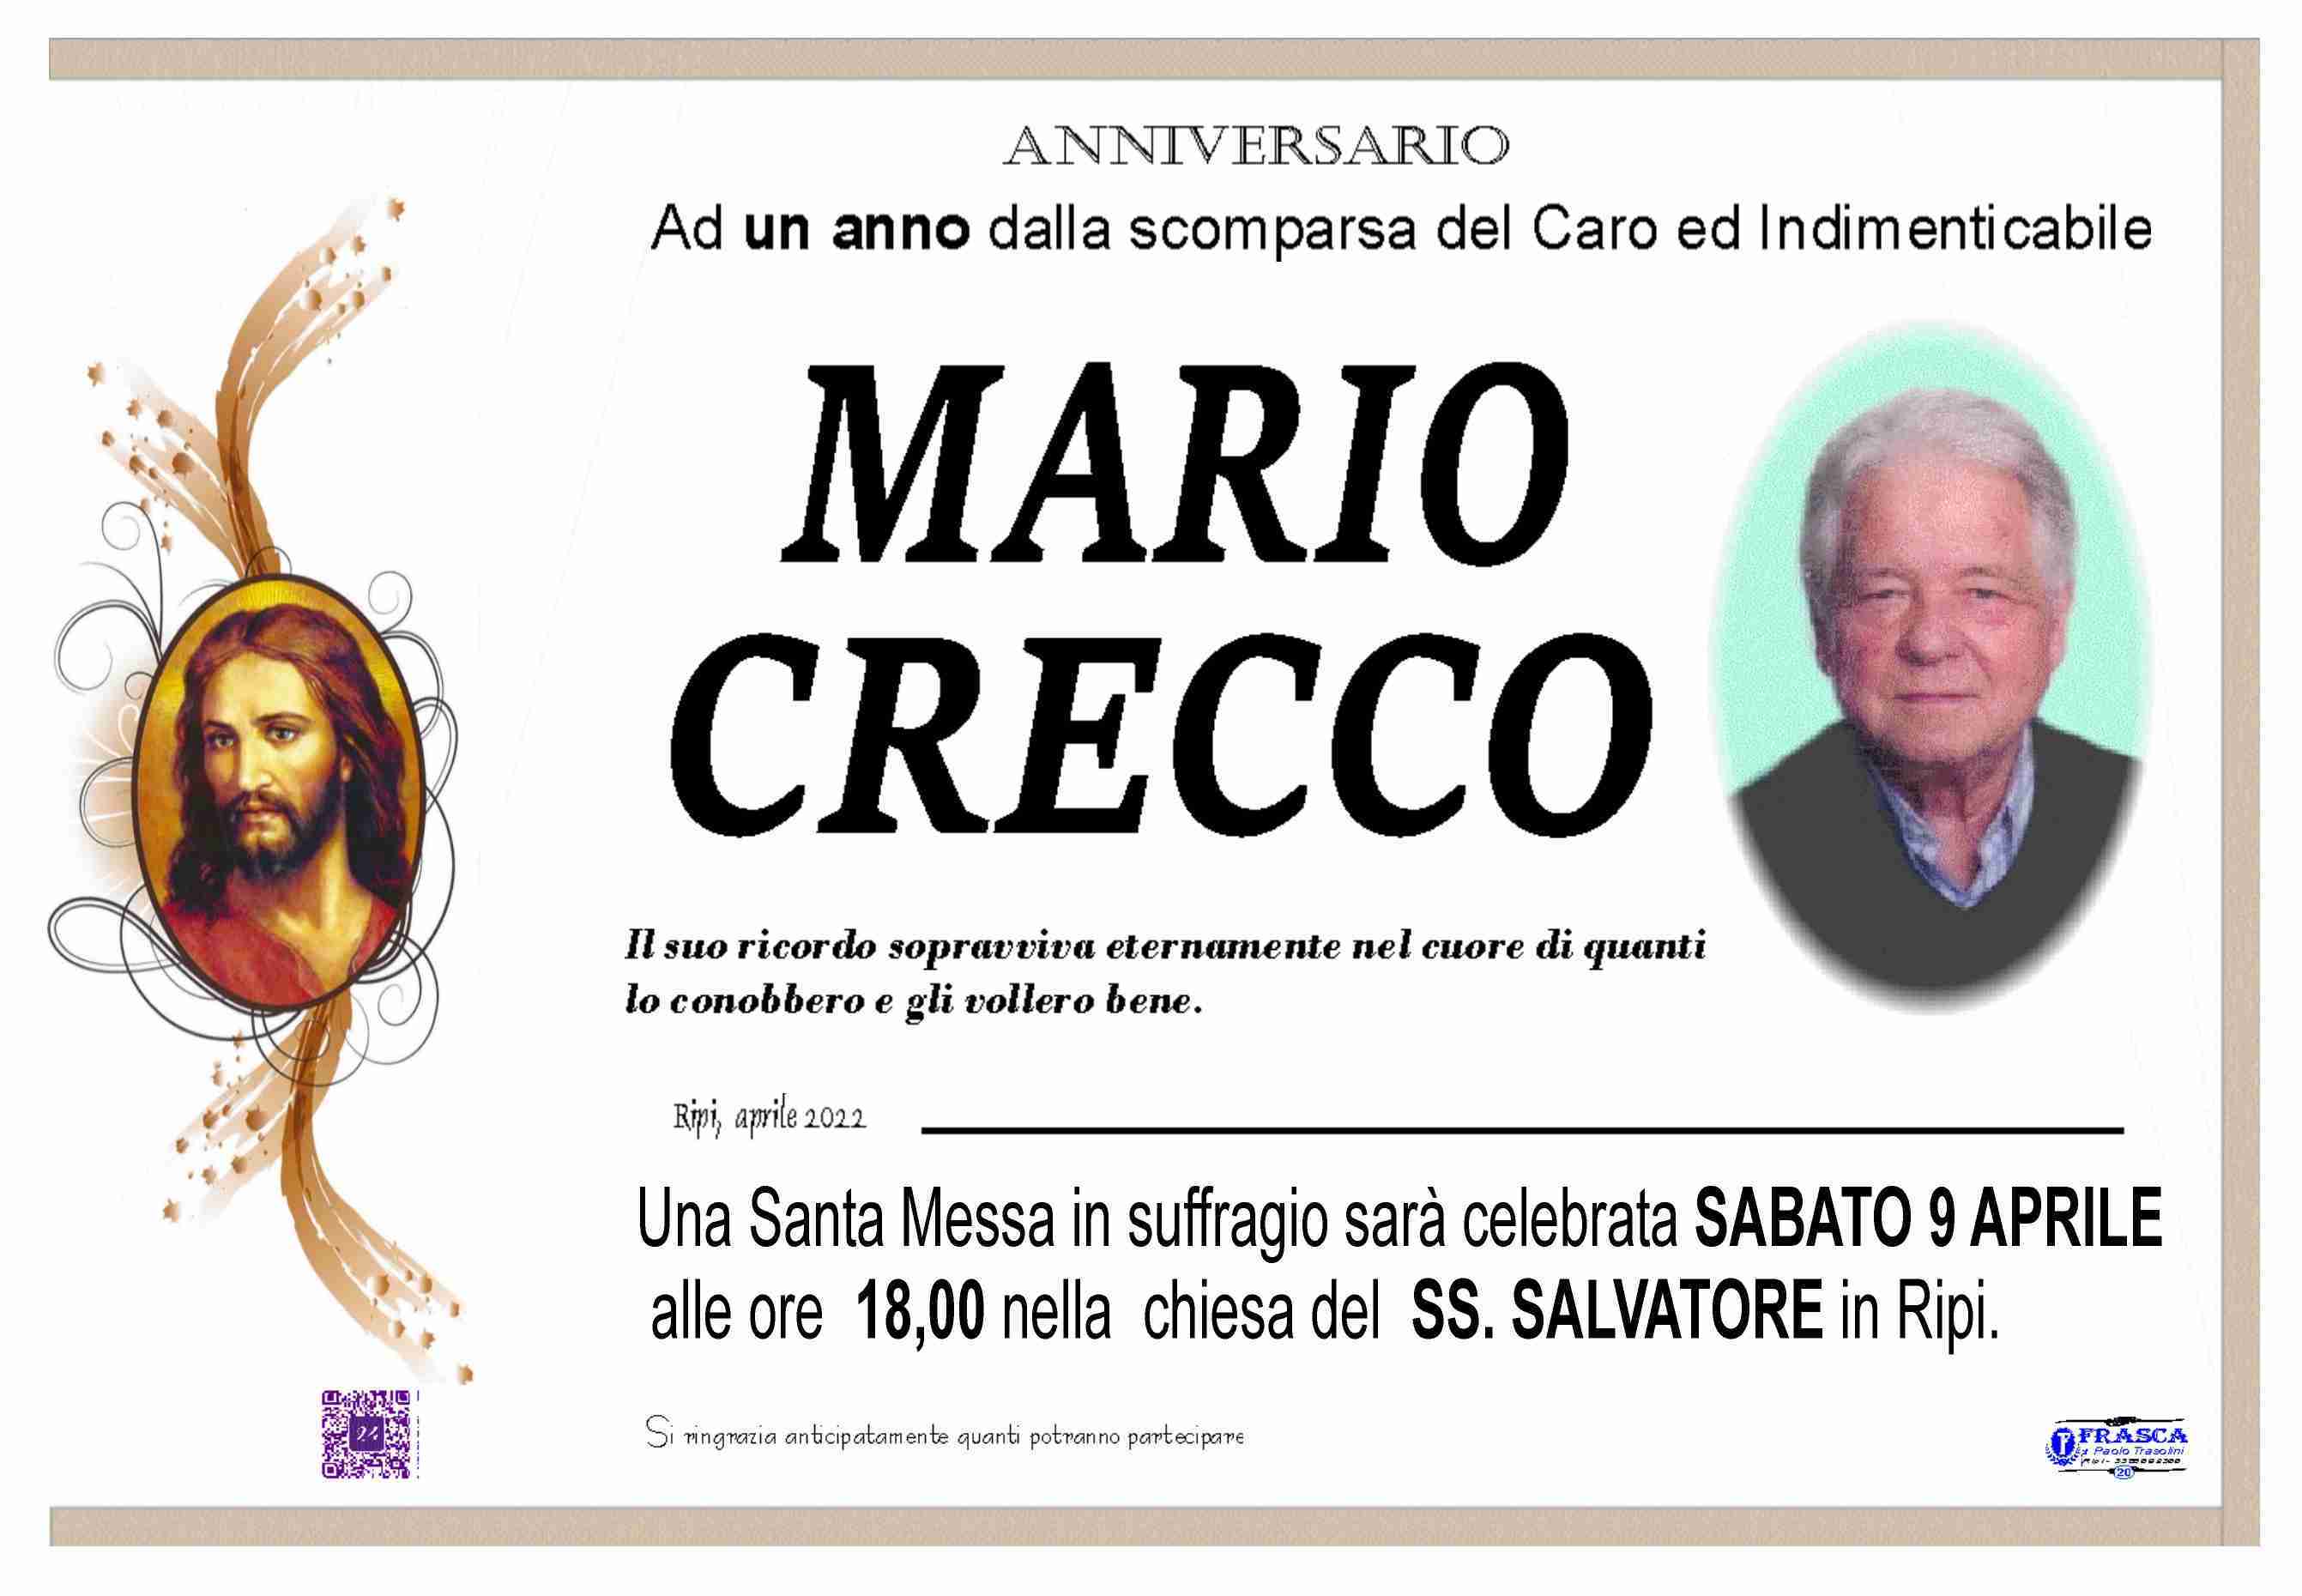 Mario Crecco